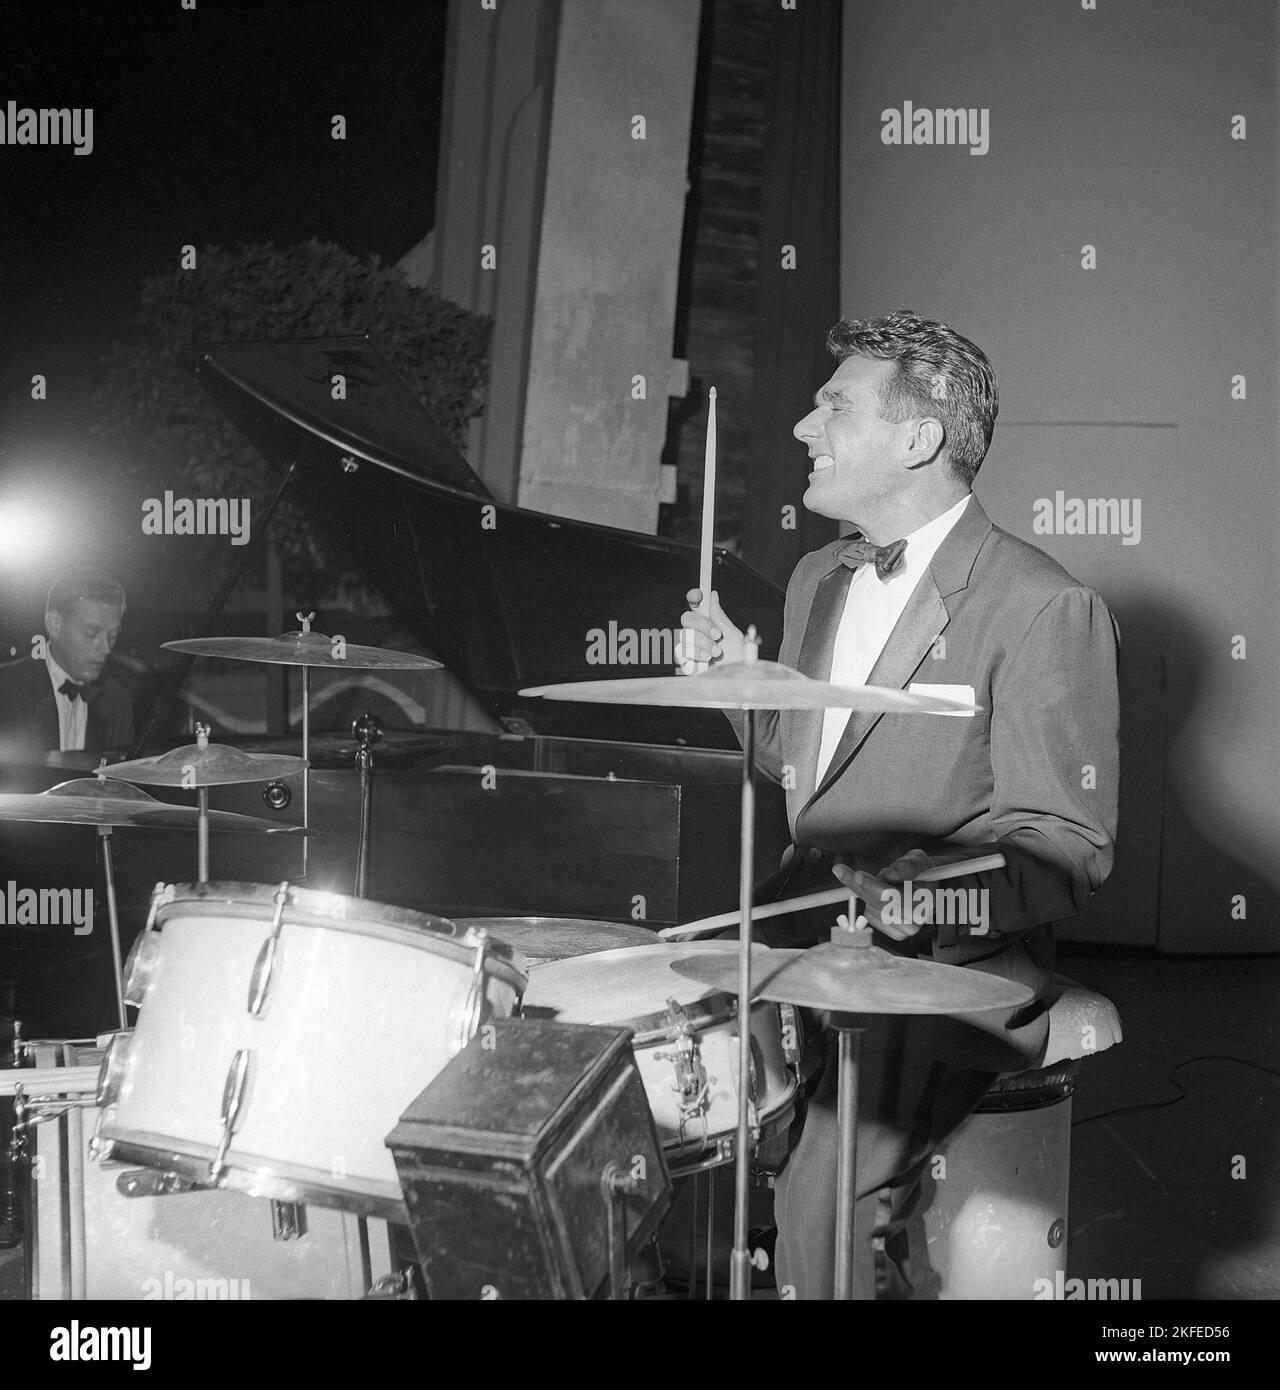 Gene Krupa. Amerikanischer Jazz-Schlagzeuger, Bandleader und Komponist. Geboren am 15 1909. januar, gestorben am 16 1973. oktober. Er war bekannt dafür, mit Energie und Showmanship aufzutreten. Krupa wird vom Modern Drummer Magazine als 'der Gründungsvater des modernen Drumsets' angesehen. Er war der erste Schlagzeuger, der 1978 in die moderne Drummer Hall of Fame aufgenommen wurde. Abgebildet während der Aufführung von i Stockholm Schweden im Juli 1952 Conard Ref 2063 Stockfoto